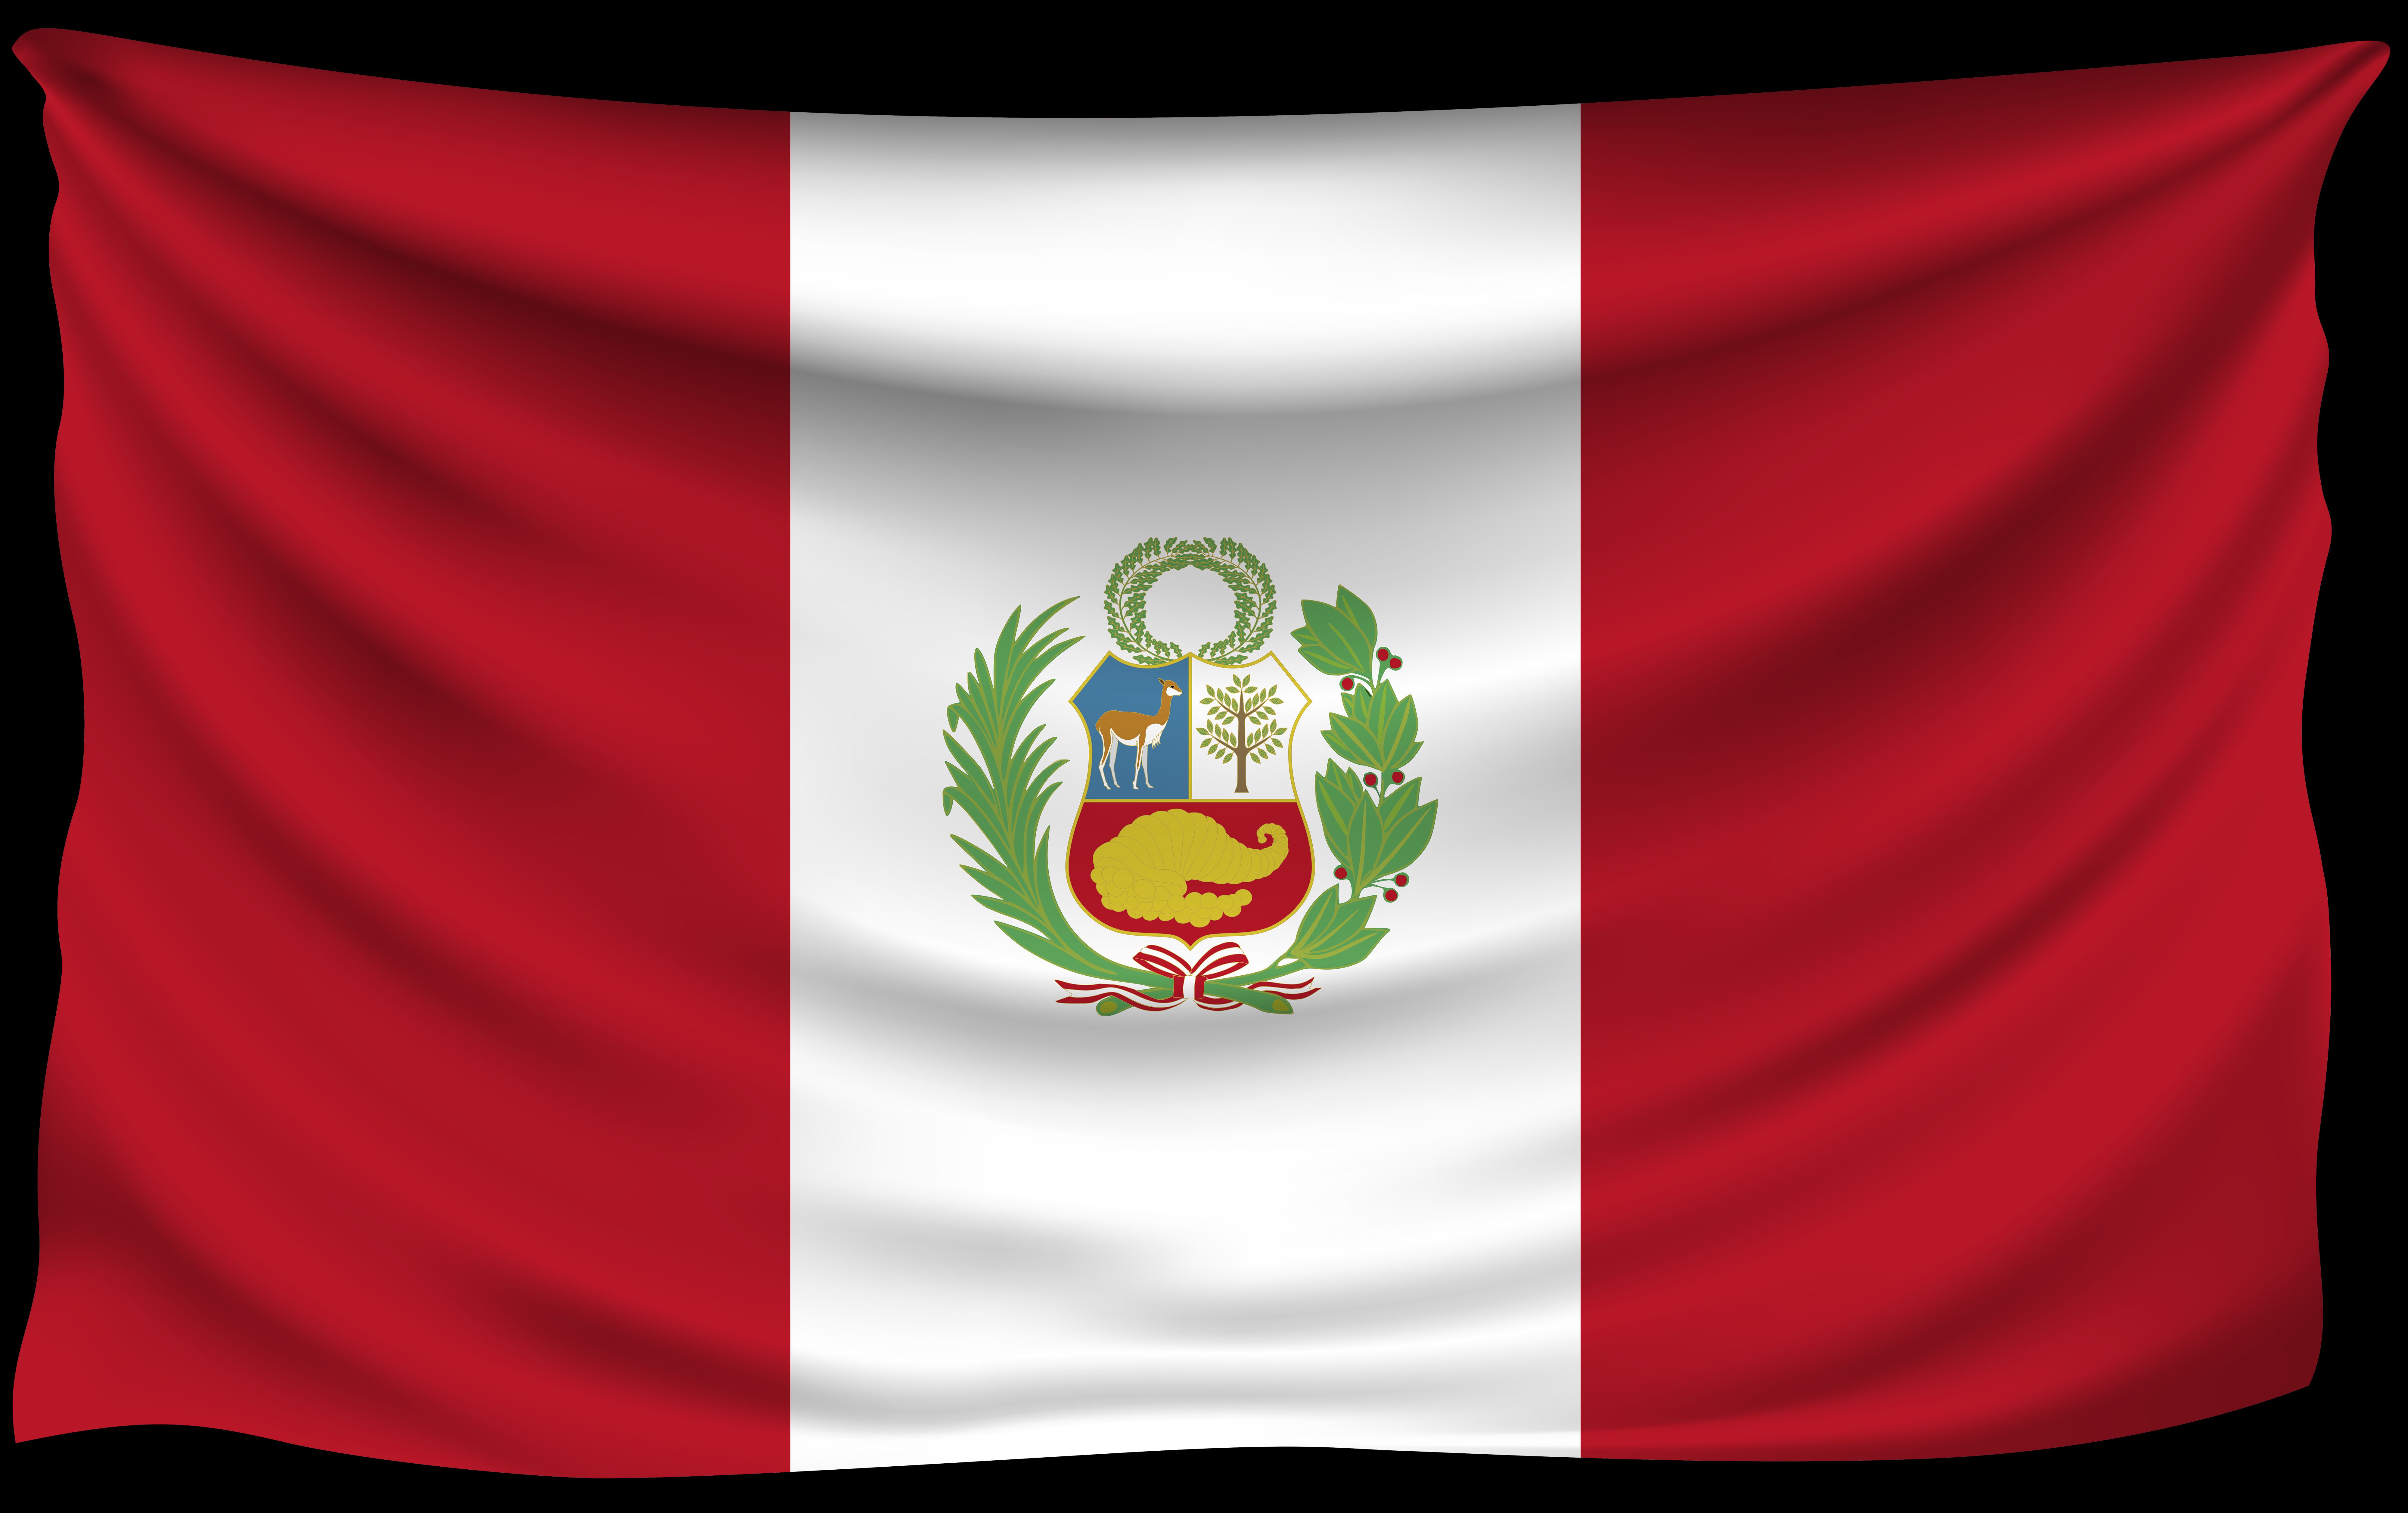 Los mejores fondos de pantalla de Bandera Peruana para la pantalla del teléfono